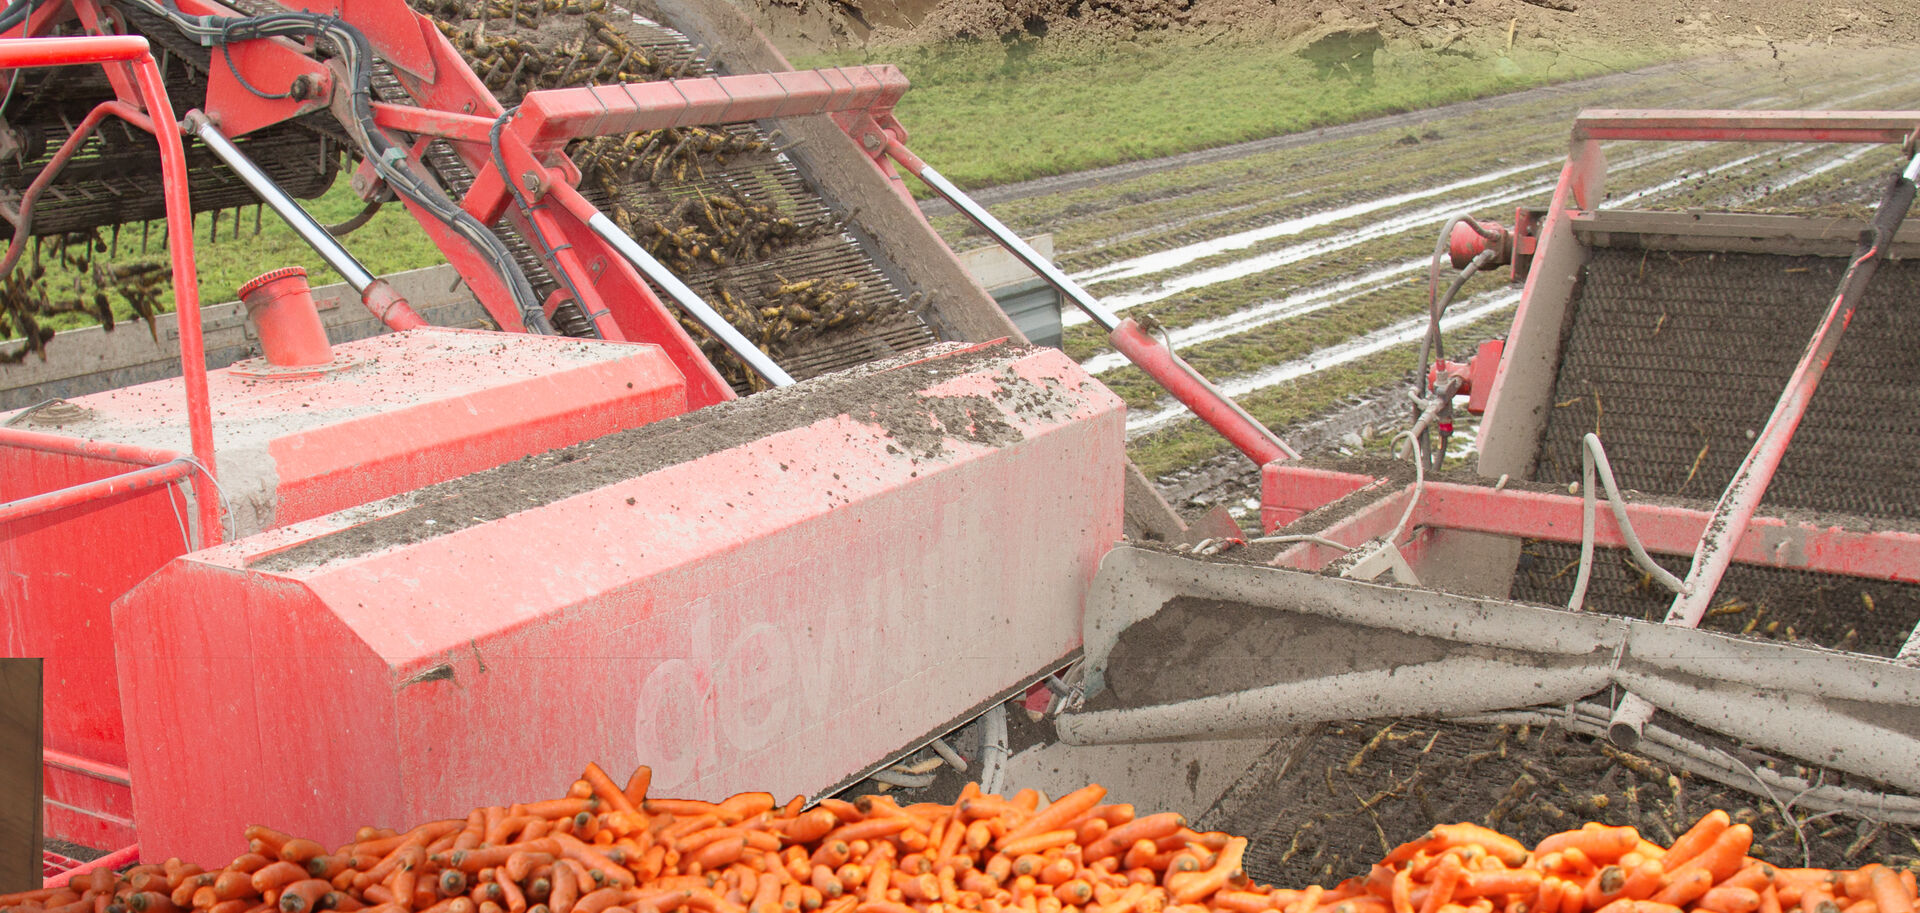 Karotten in landwirtschaftlichem Gerät | © Land schafft Leben